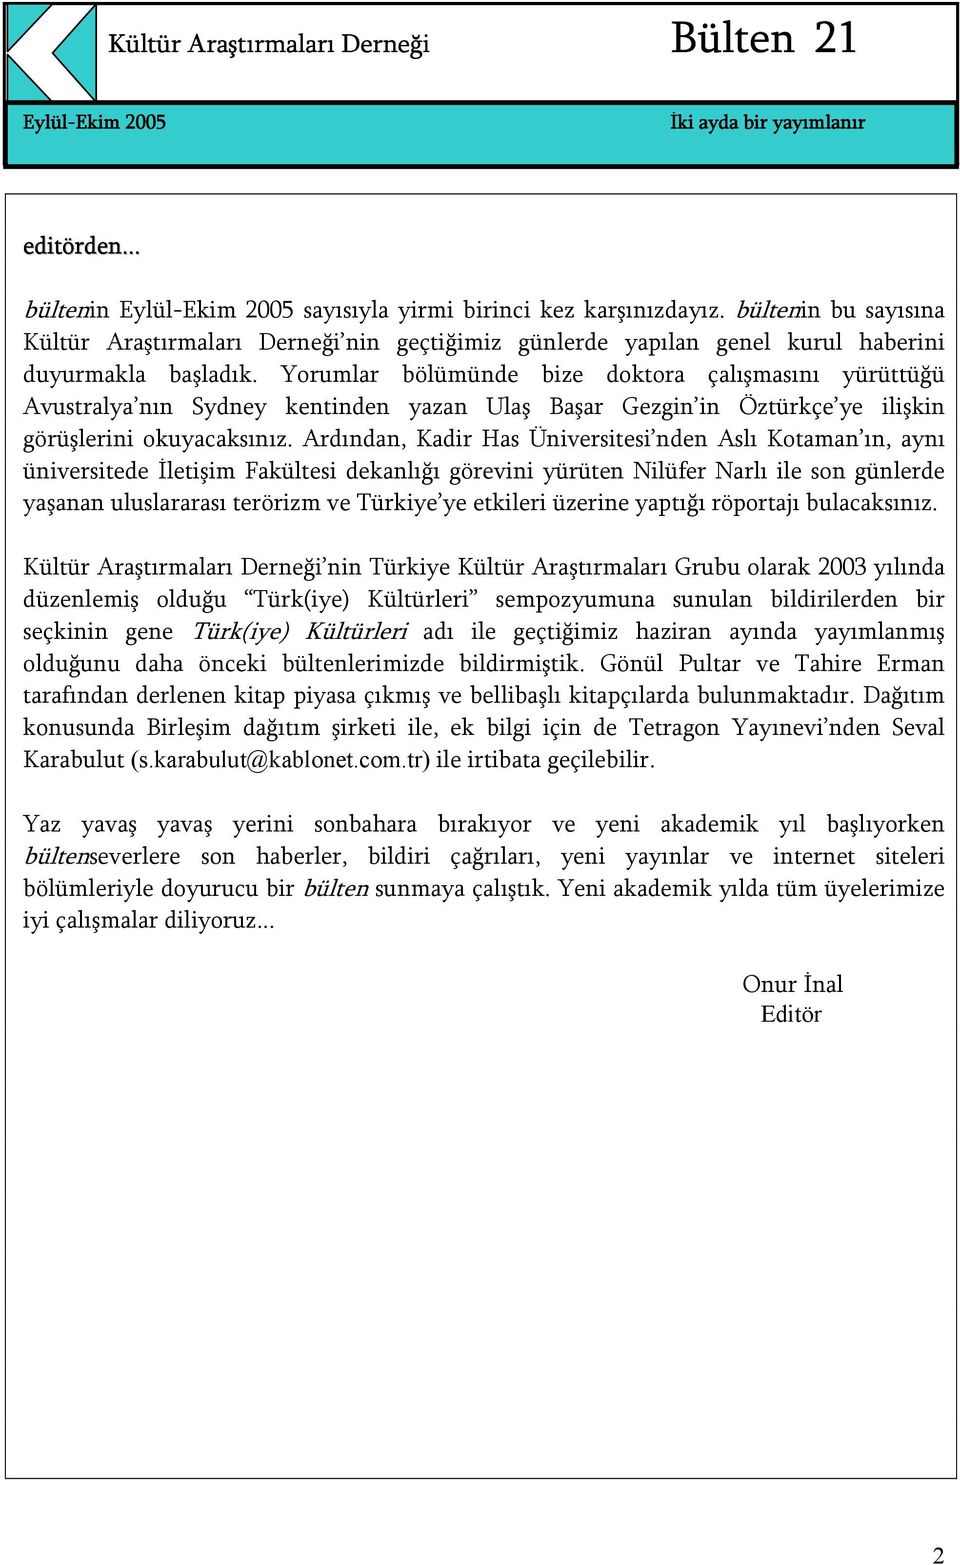 Ardından, Kadir Has Üniversitesi nden Aslı Kotaman ın, aynı üniversitede İletişim Fakültesi dekanlığı görevini yürüten Nilüfer Narlı ile son günlerde yaşanan uluslararası terörizm ve Türkiye ye